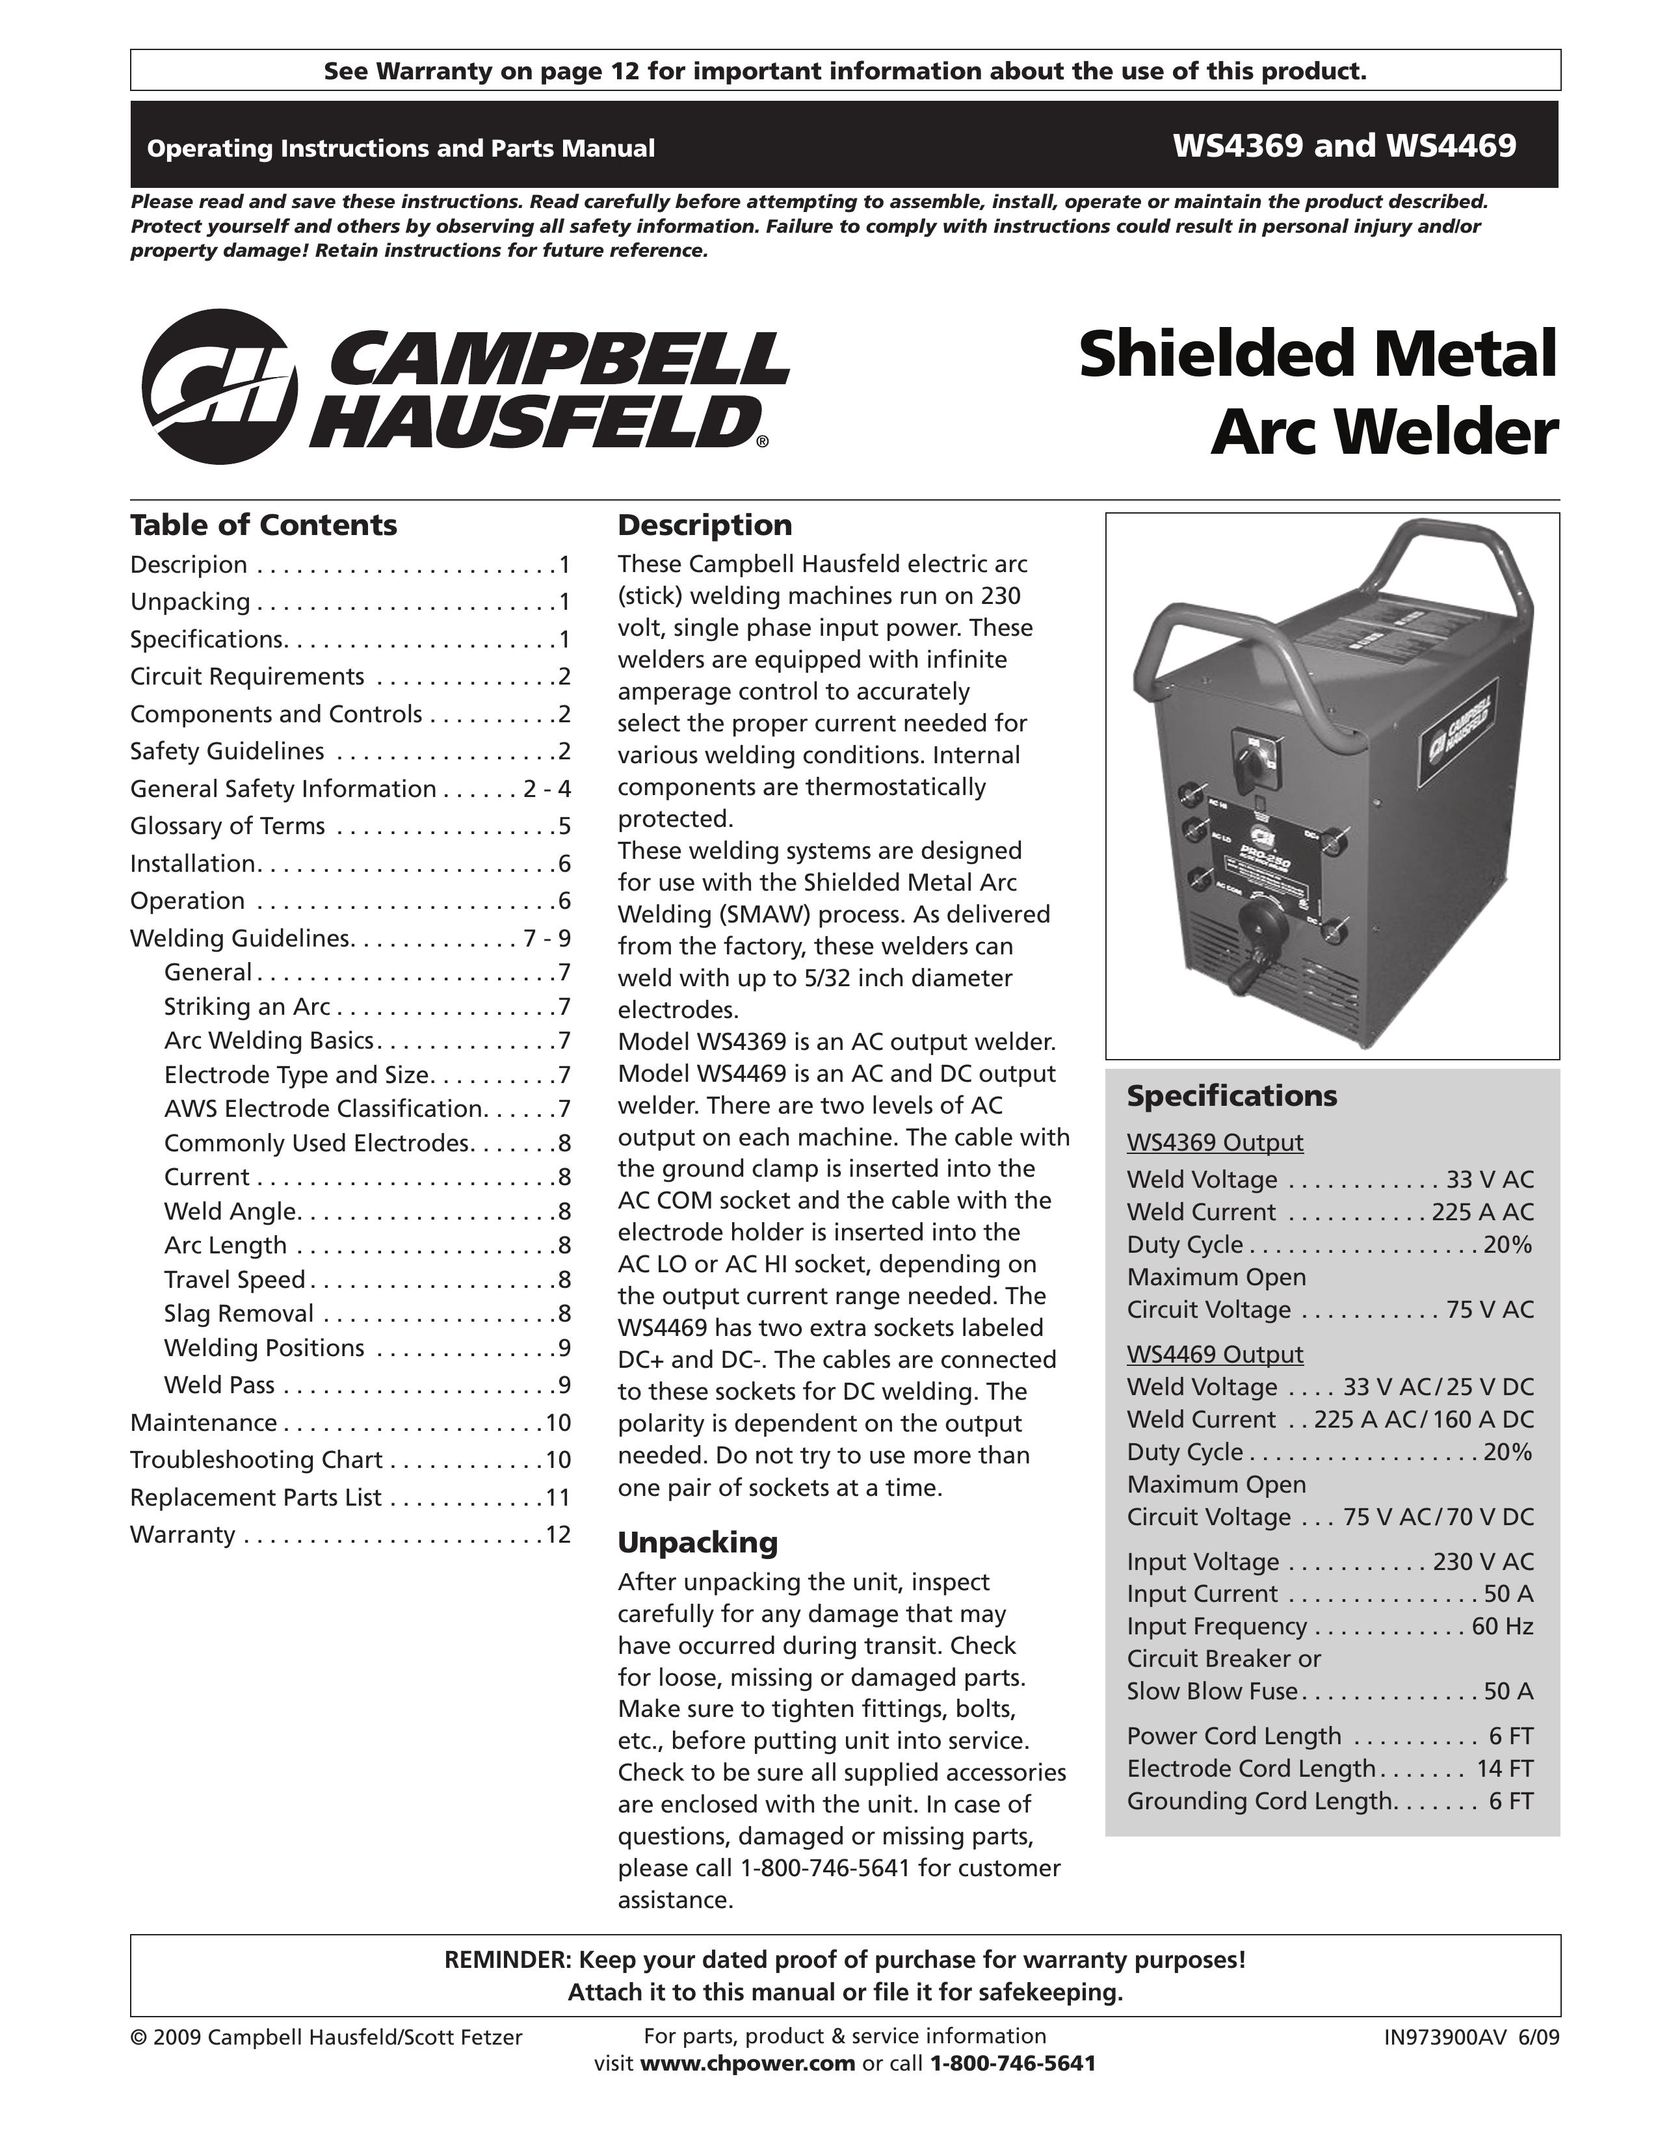 Campbell Hausfeld IN973900AV Welder User Manual